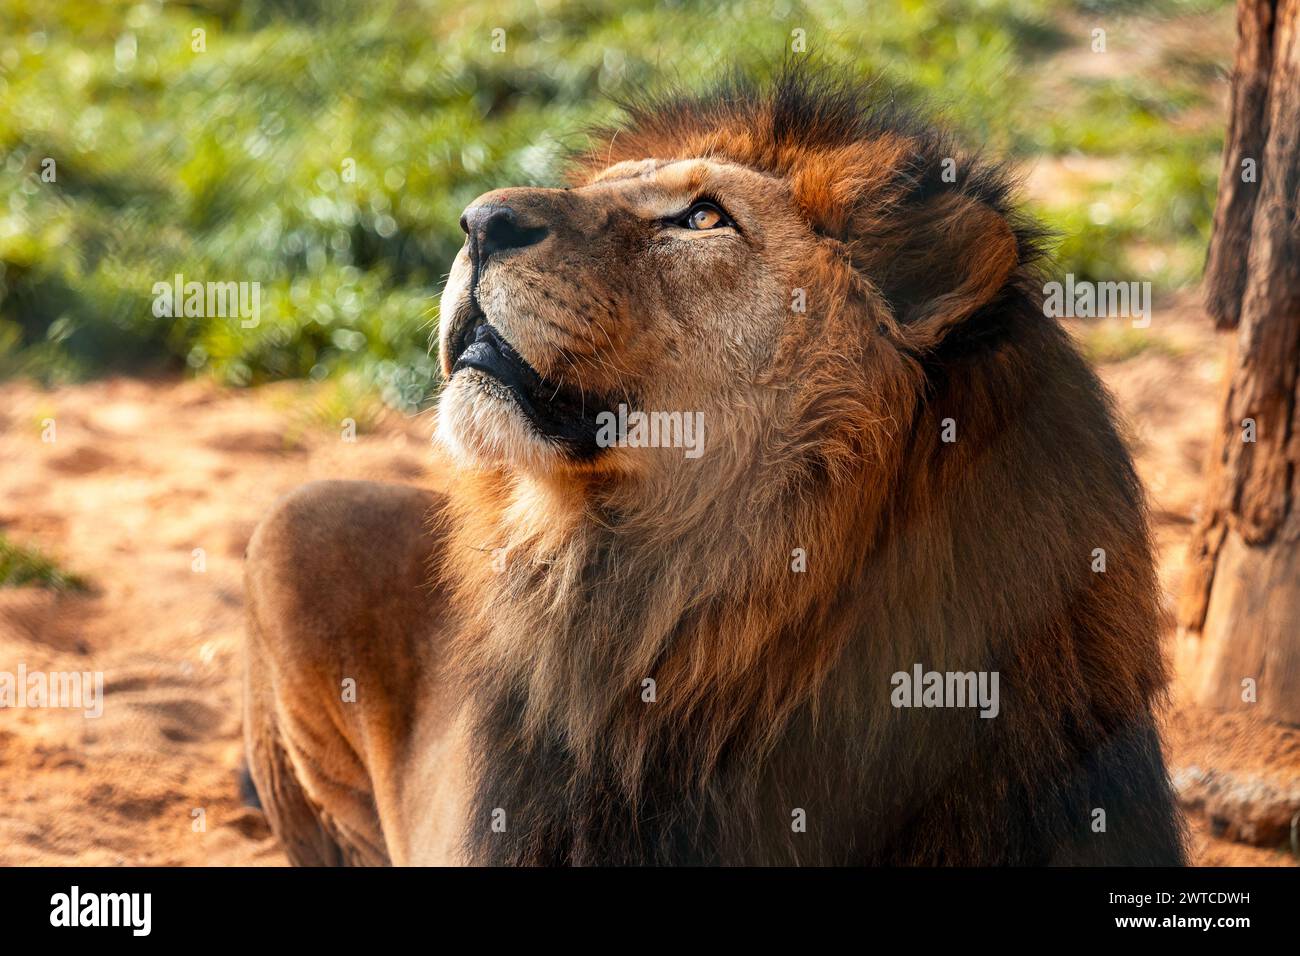 Berberlöwe, auch Nordafrikanischer Löwe, Atlas-Löwe und ägyptischer Löwe genannt. Das Detail des Kopfes und eine wunderschöne Mähne. Stockfoto